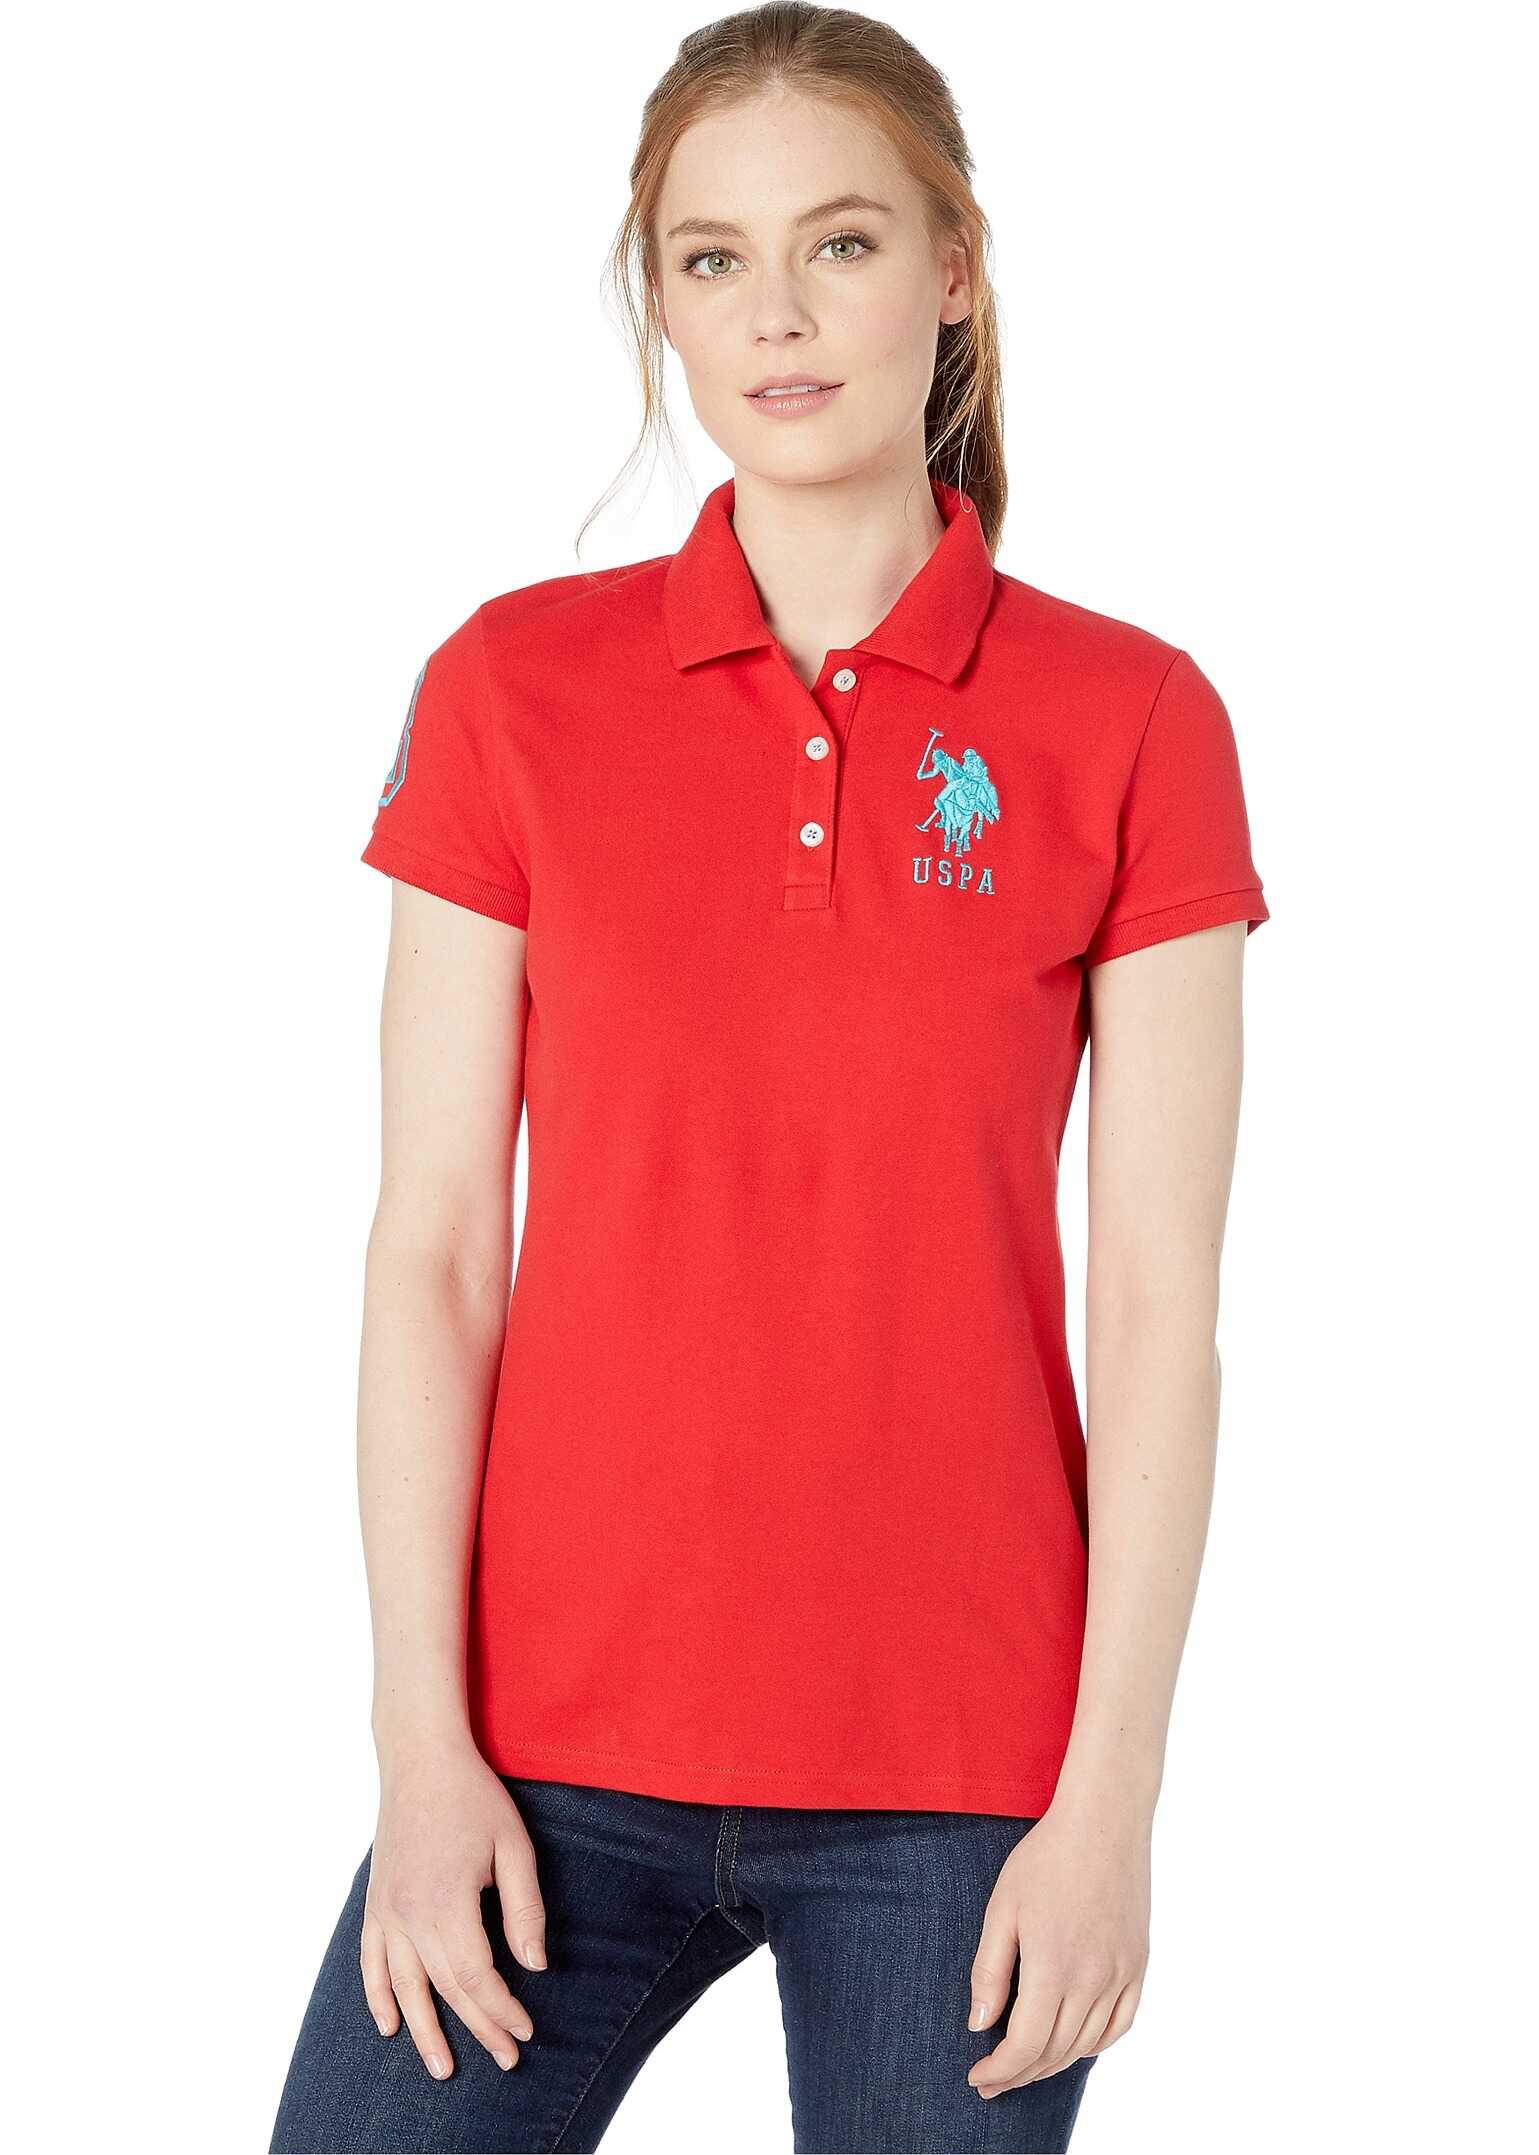 U.S. POLO ASSN. Neon Logos Short Sleeve Polo Shirt Racing Red